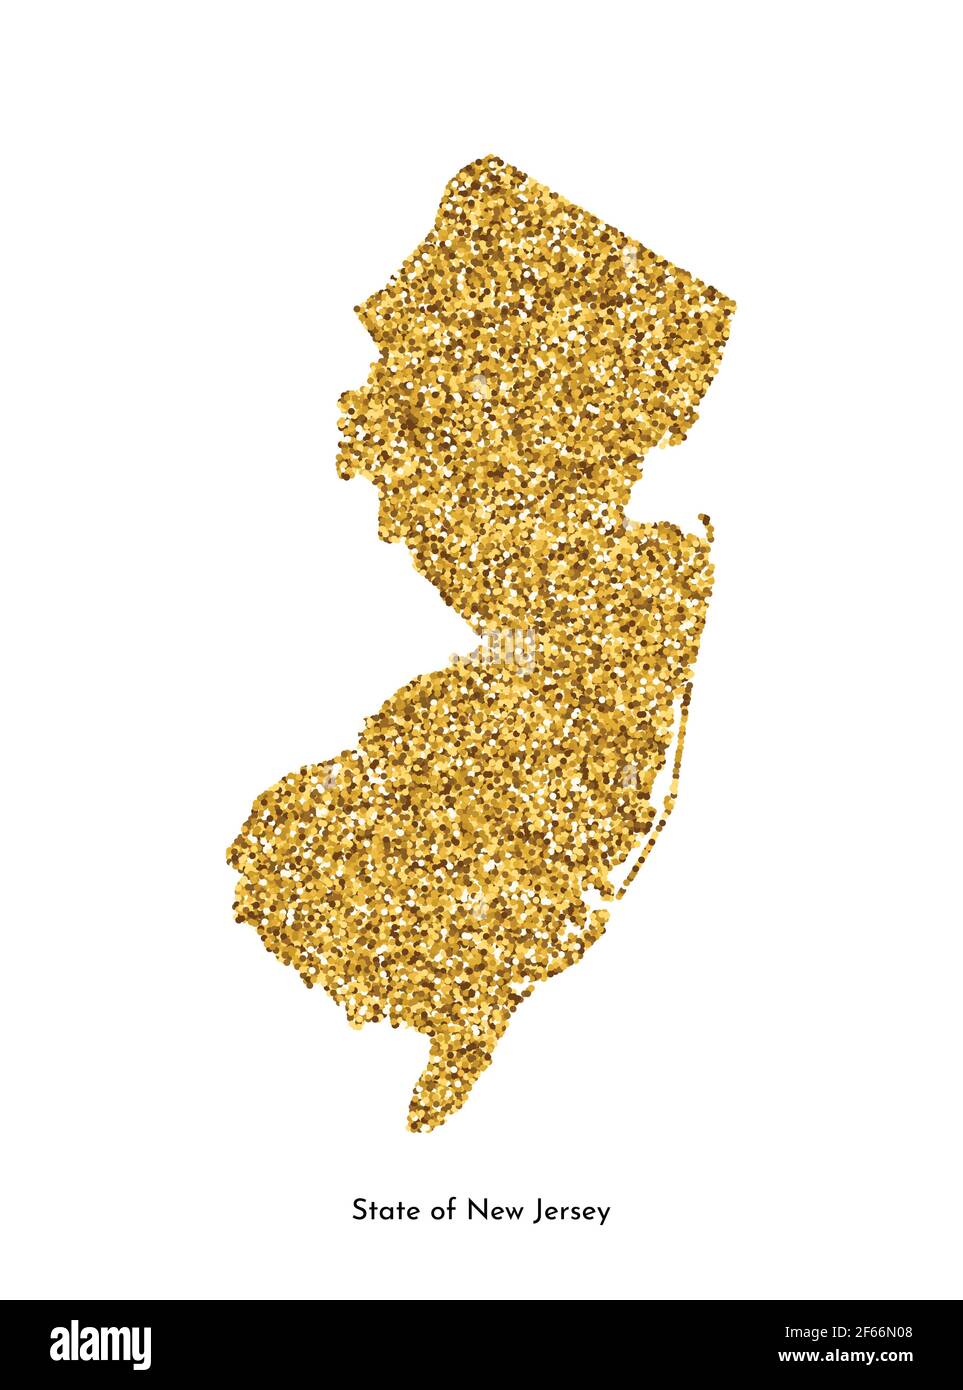 Vektor isolierte Illustration mit vereinfachter Karte von State of New Jersey (USA). Glänzende goldfarbene Glitzerstruktur. Dekoration helle Feiertagsvorlage. Stock Vektor